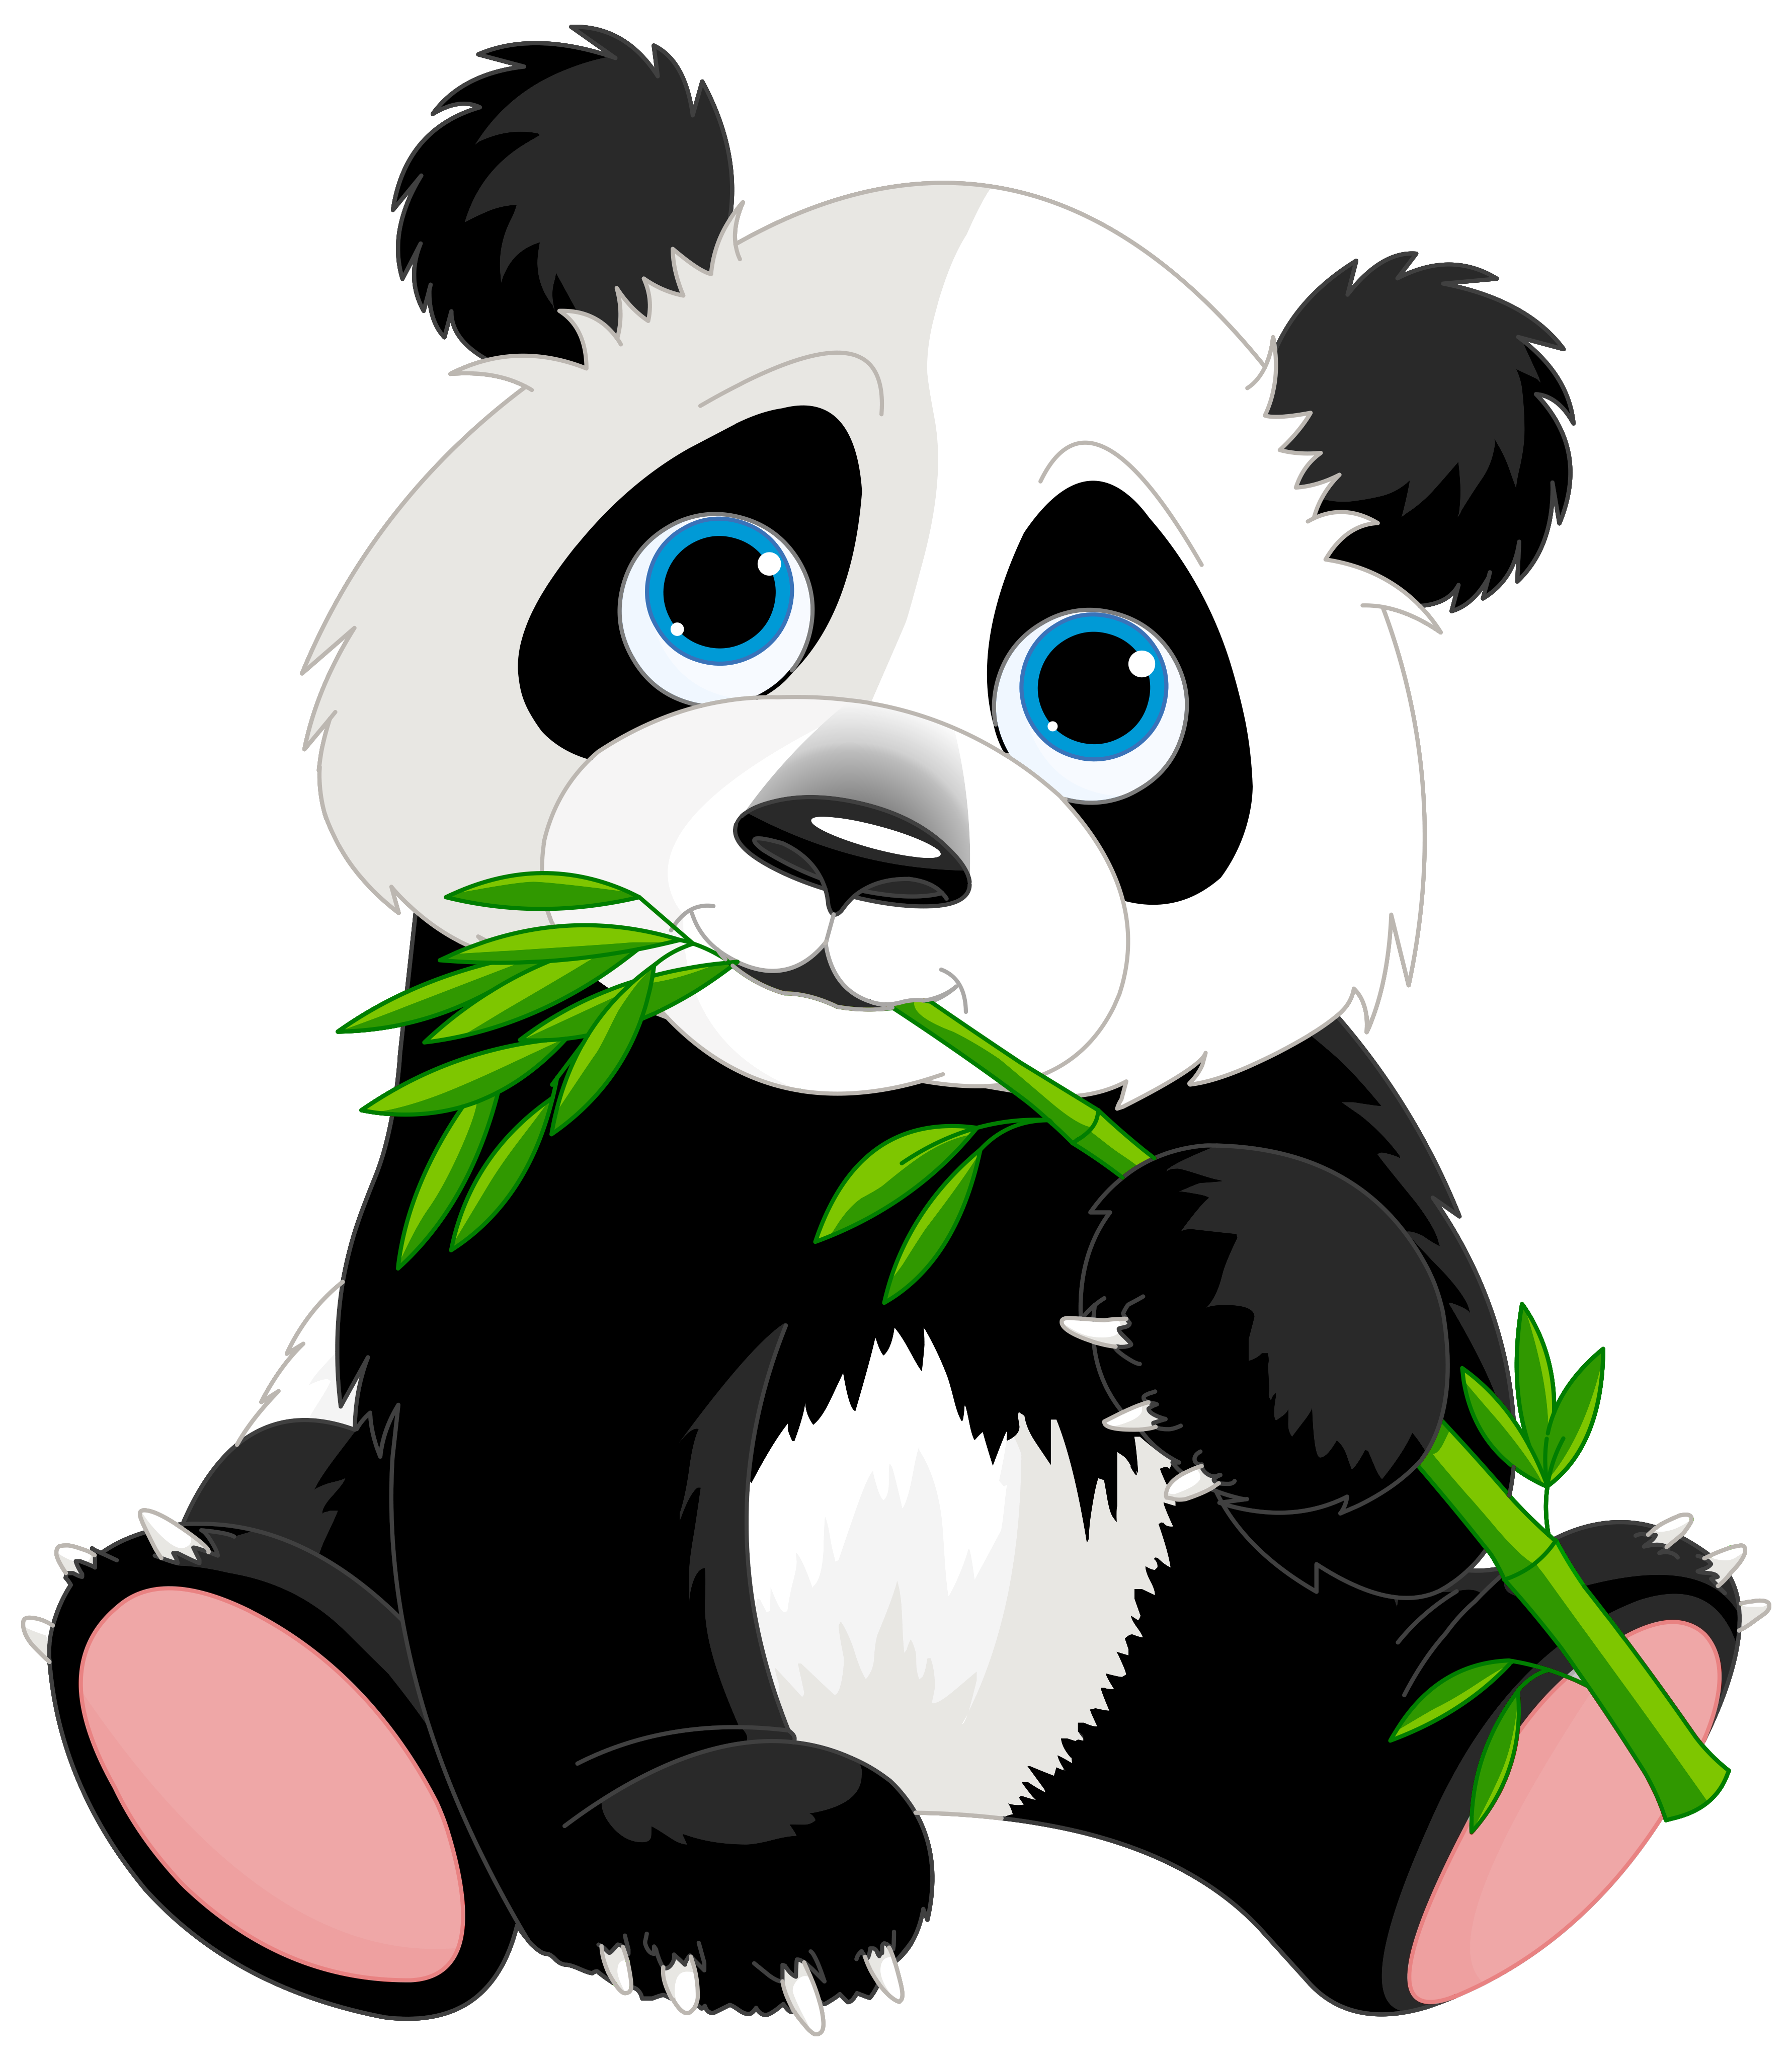 Jeux de Panda